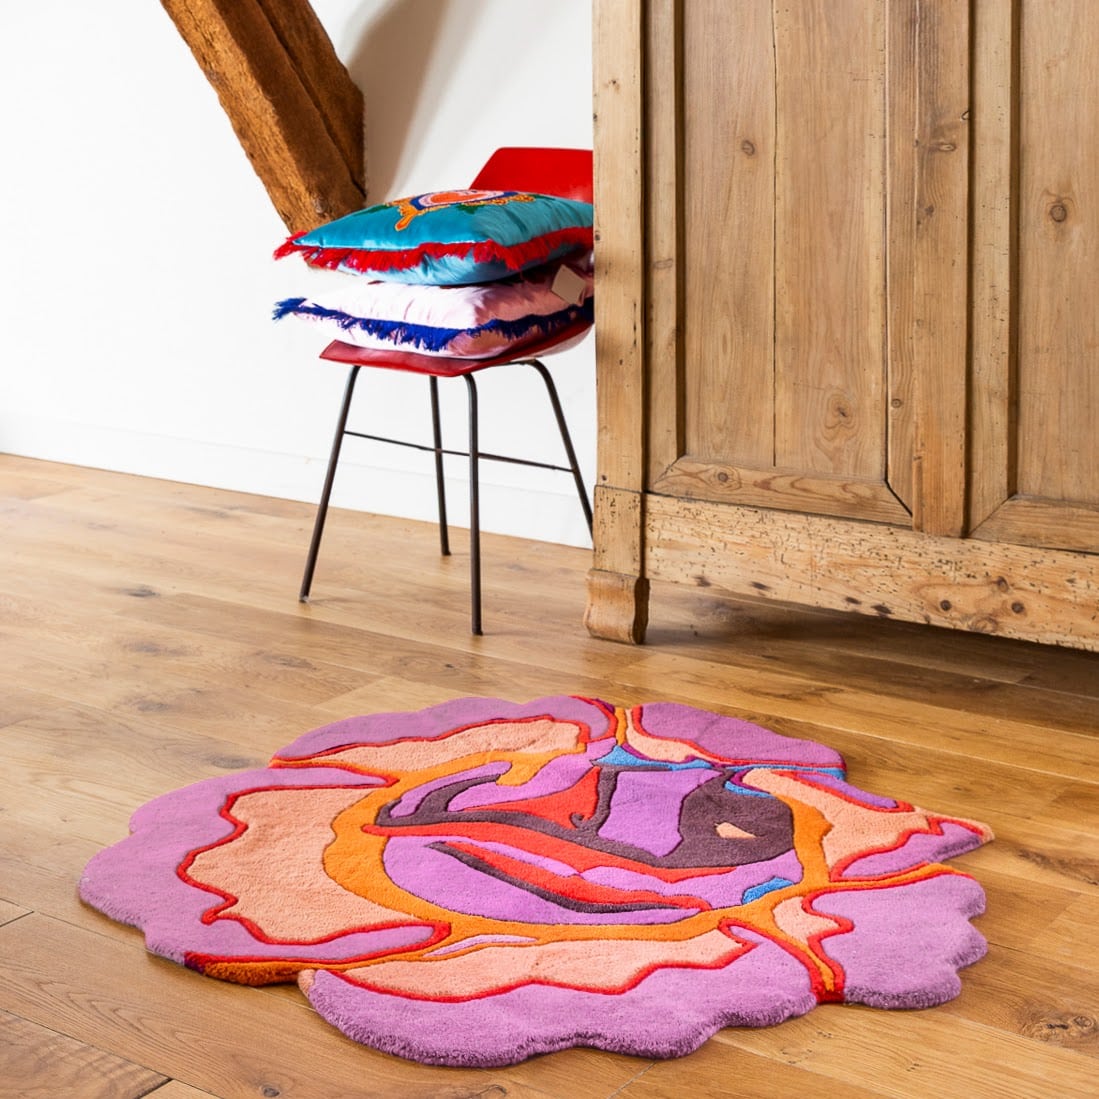 Køb runde tæpper i facon - en lilla rose. Se vores udvalg af tæpper!